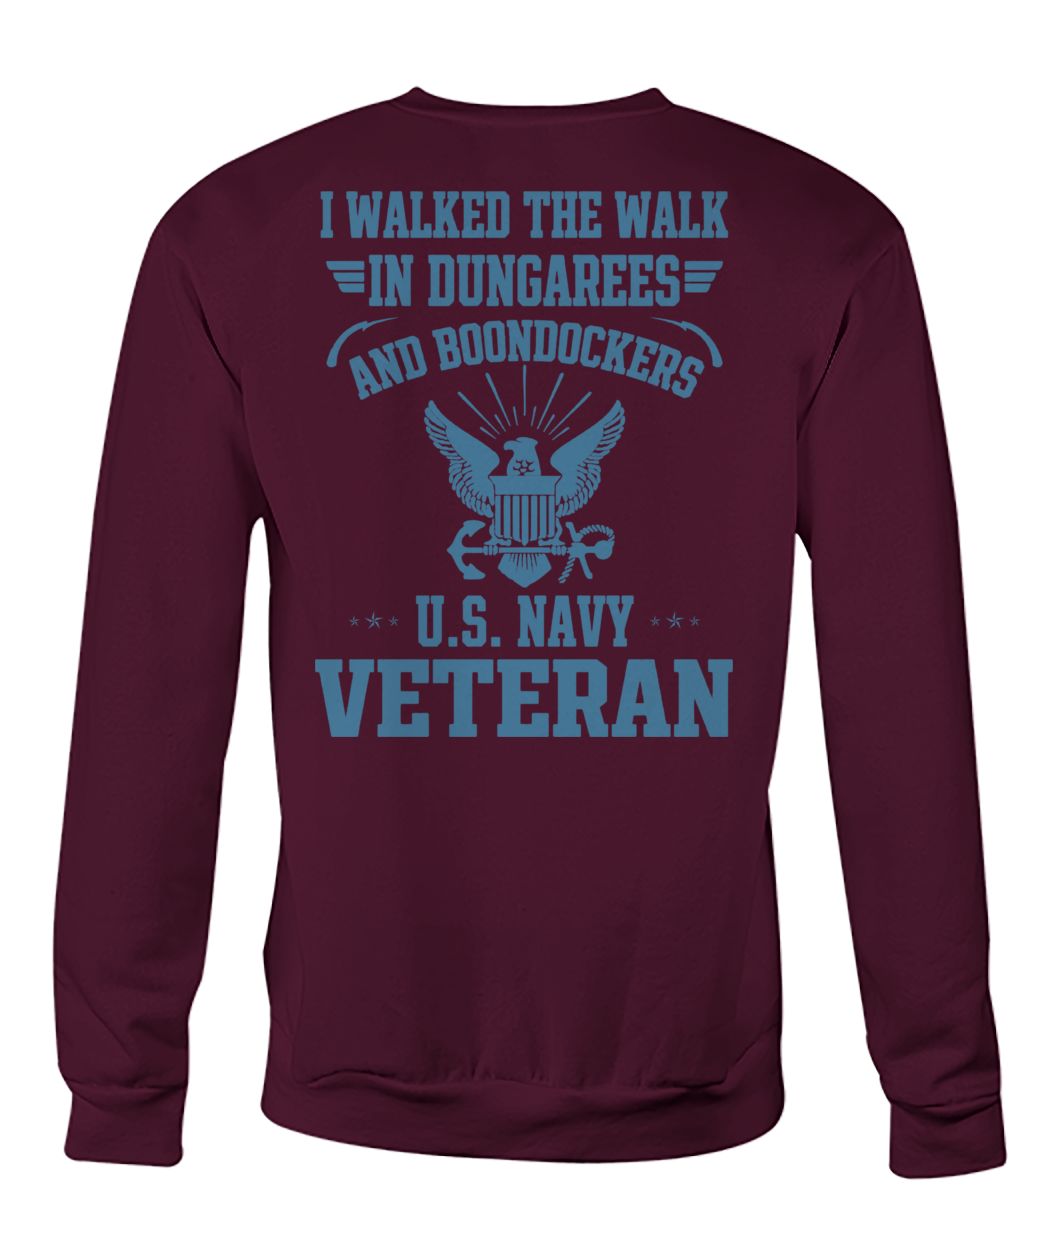 I walked the walk in dungarees and boondockers US navy veteran crew neck sweatshirt